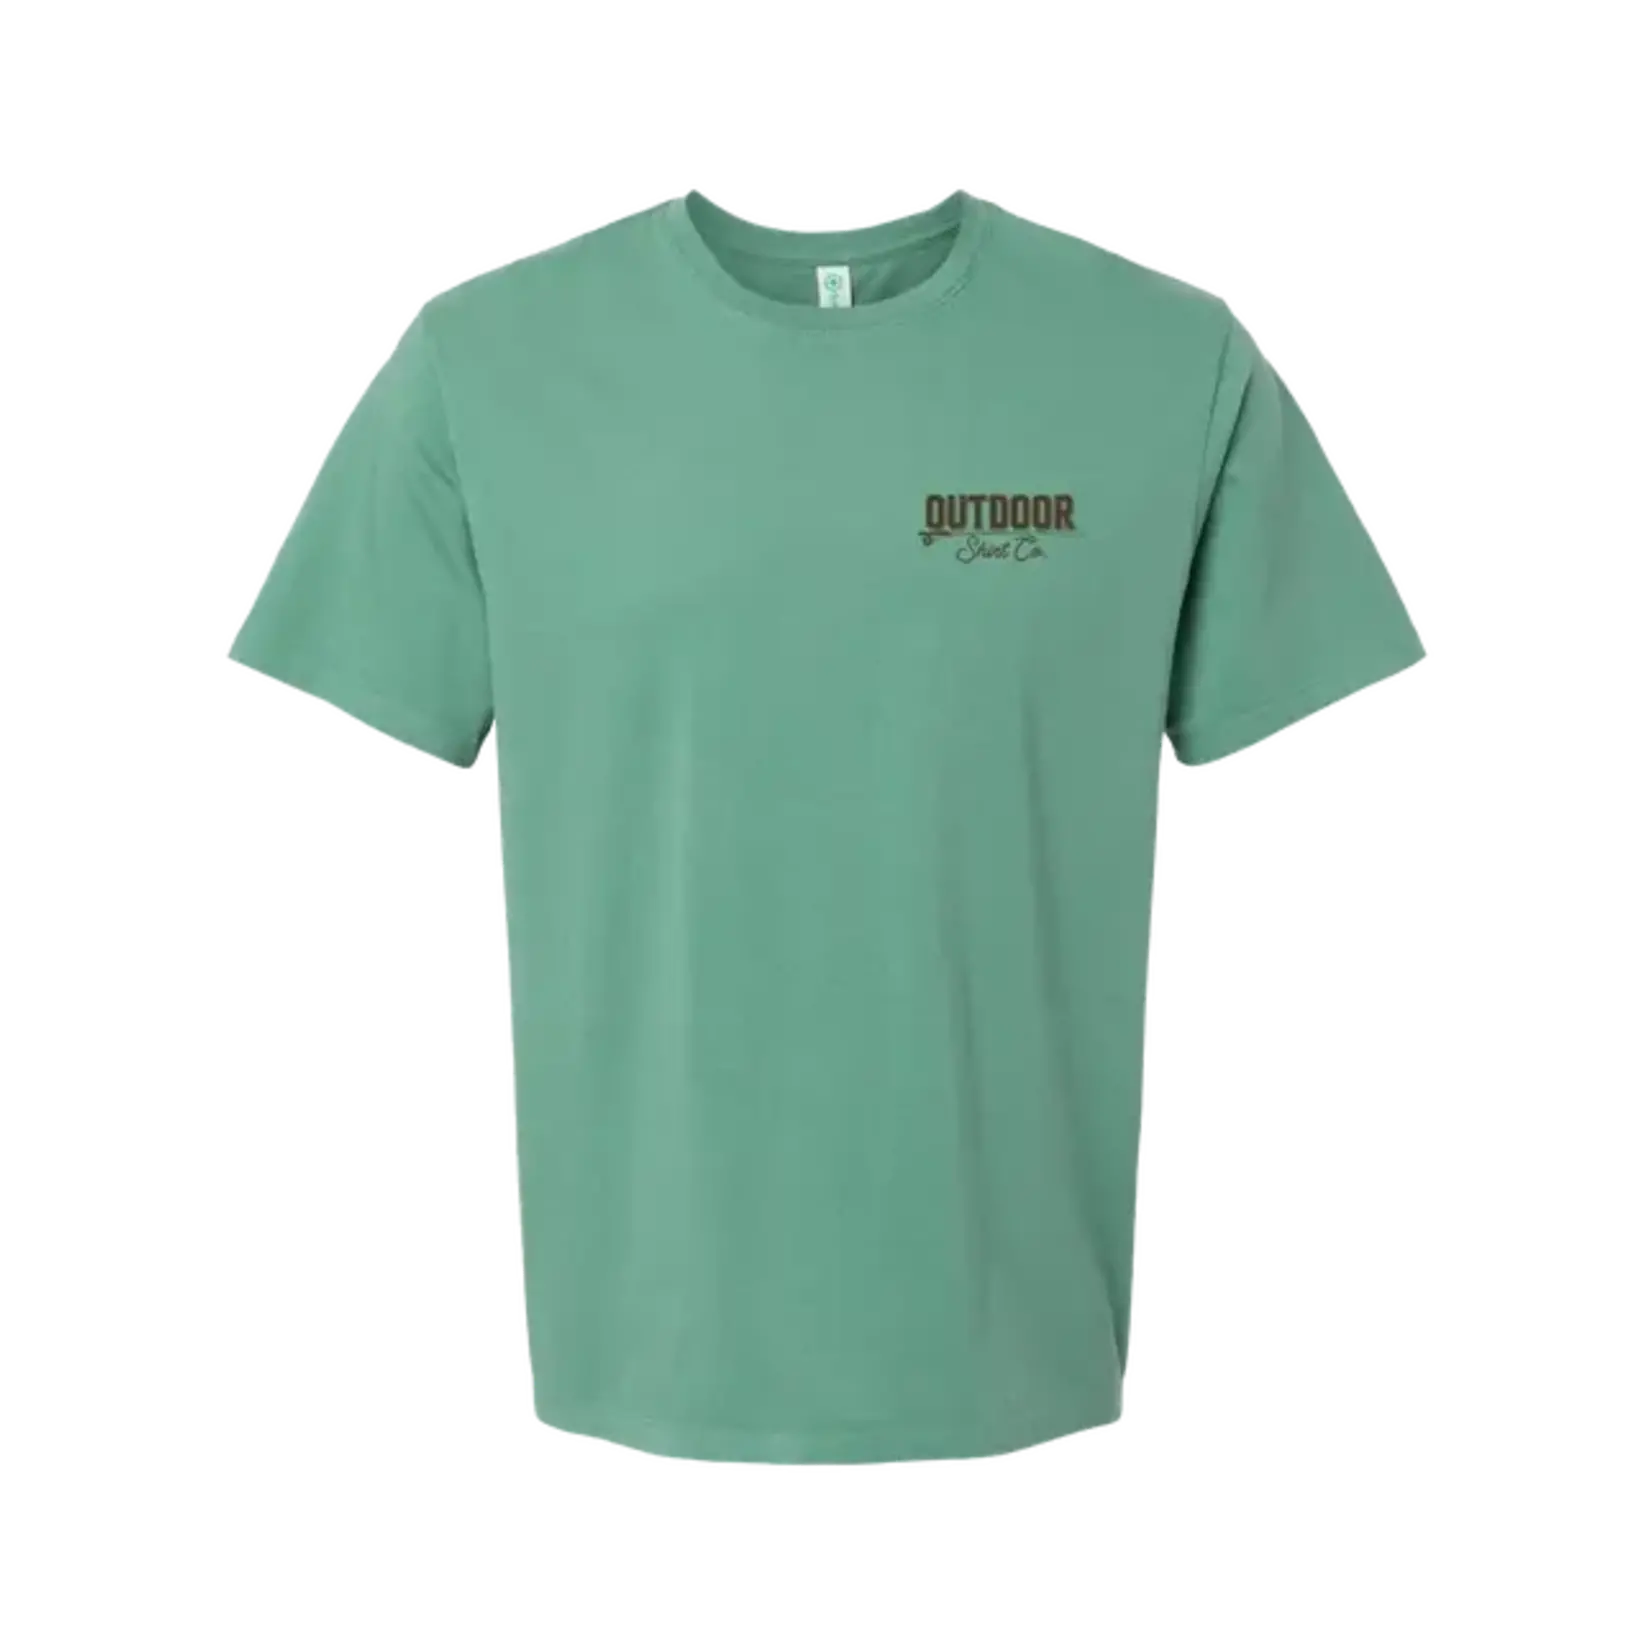 Outdoor Shirt Co. Outdoor Shirt Co. Bass S/S TEE Shirt